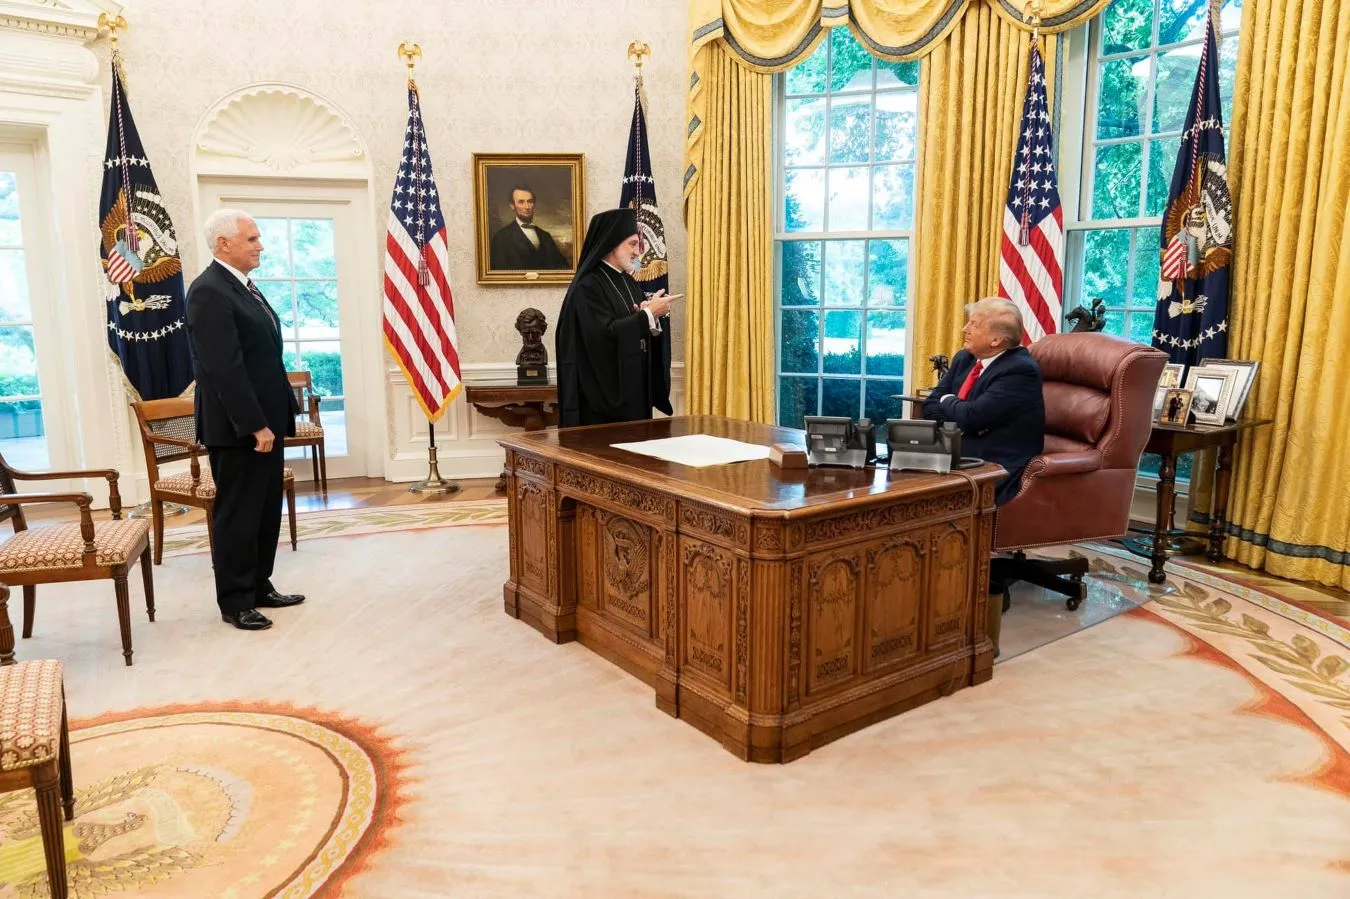 Πόσο ανίκανοι πια; Οι συνεργάτες του Ελπιδοφόρου έδωσαν στη δημοσιότητα παλαιότερη φωτογραφία του να είναι όρθιος και ο ασεβής Ντόναλντ Τράμπ να …κάθεται!!!